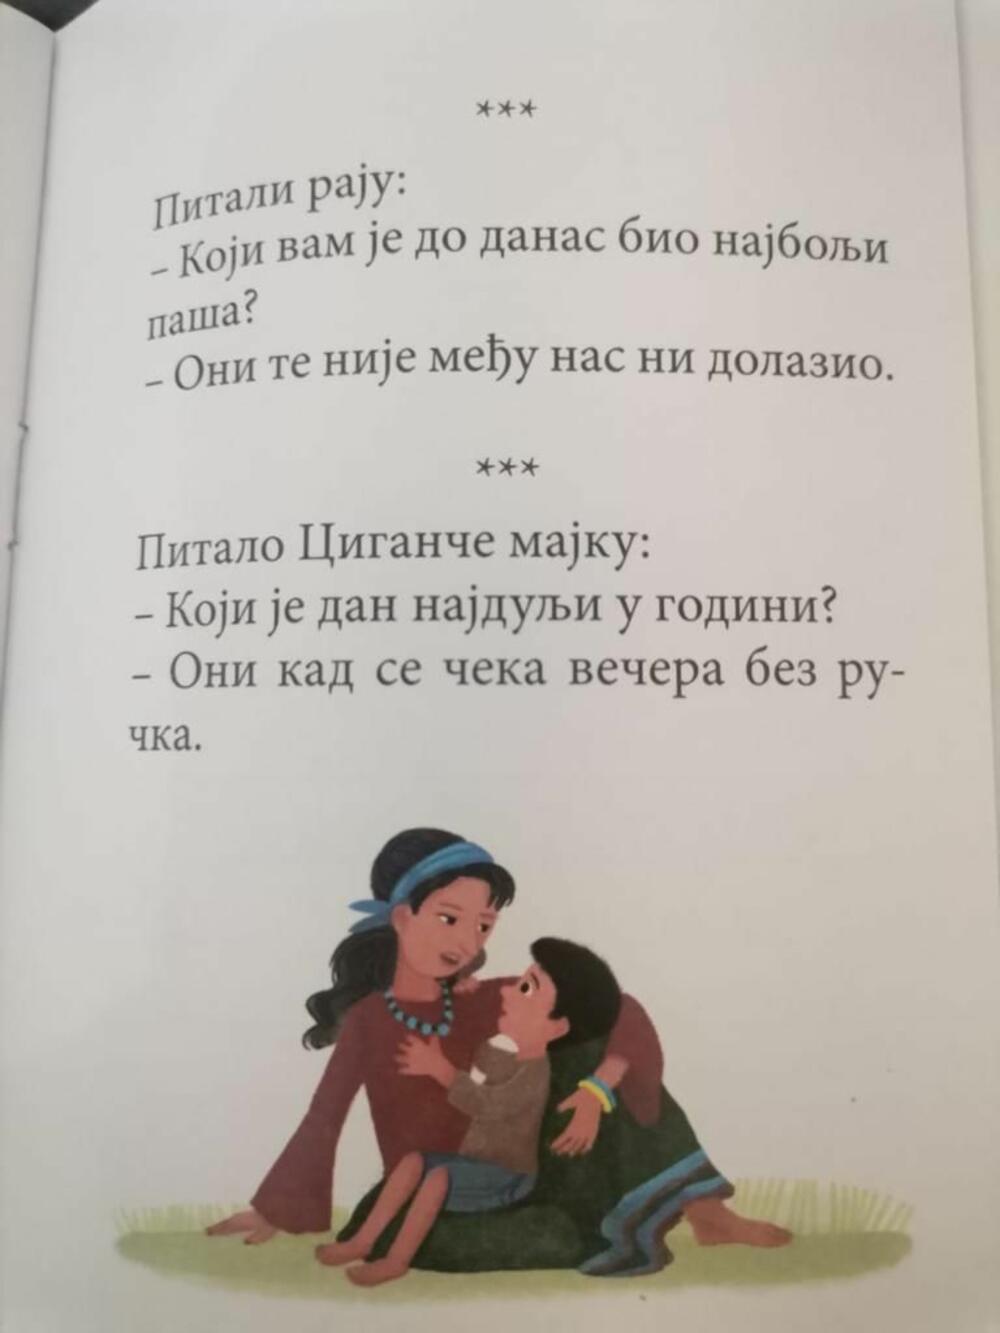 Romsko dete u udžbeniku